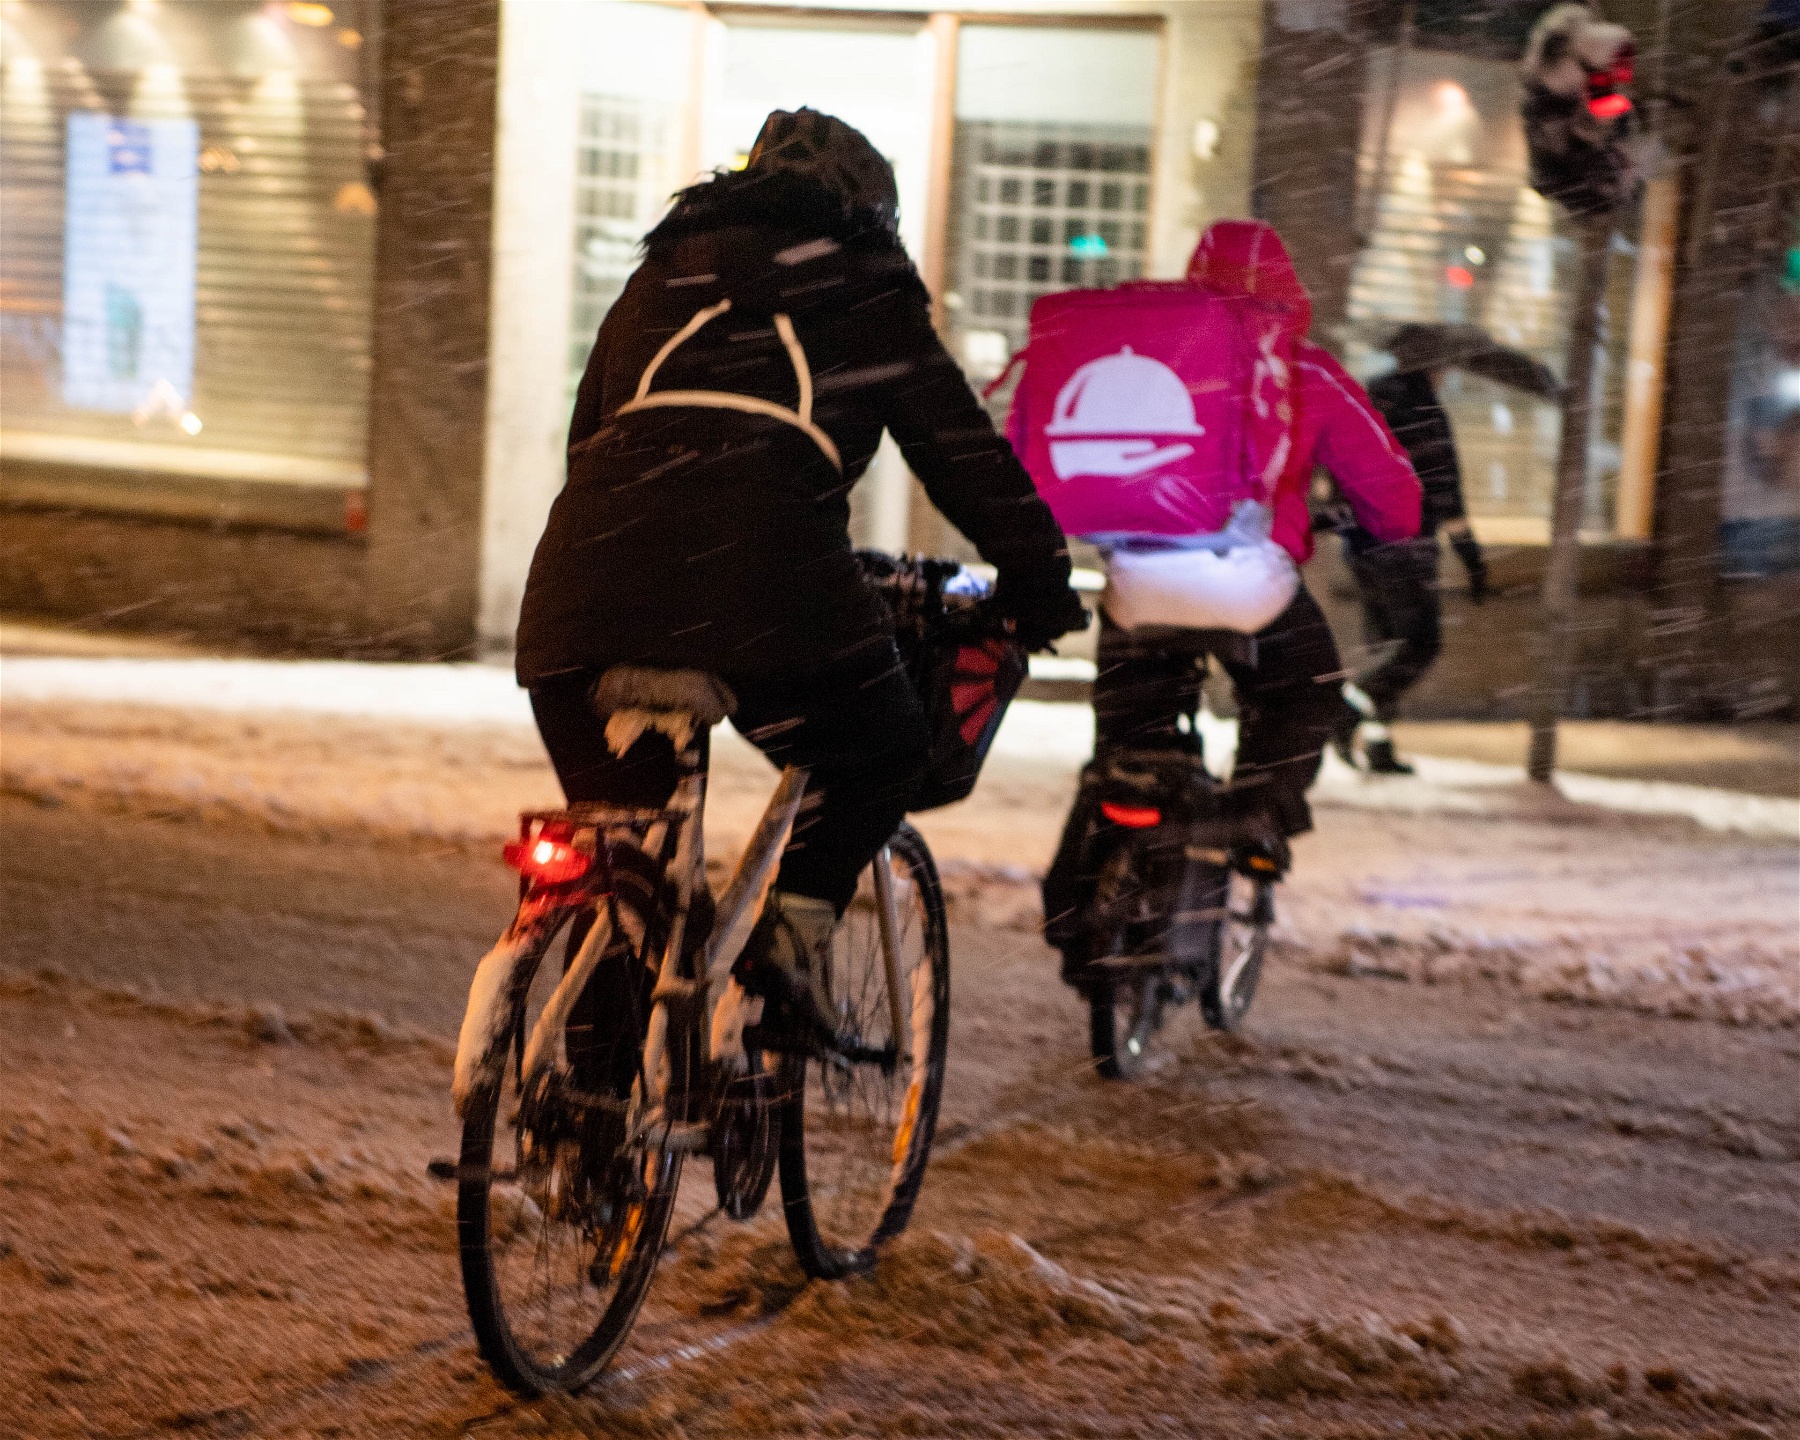 Foodoracyklist cyklar bort från kameran på en snömoddig gata.